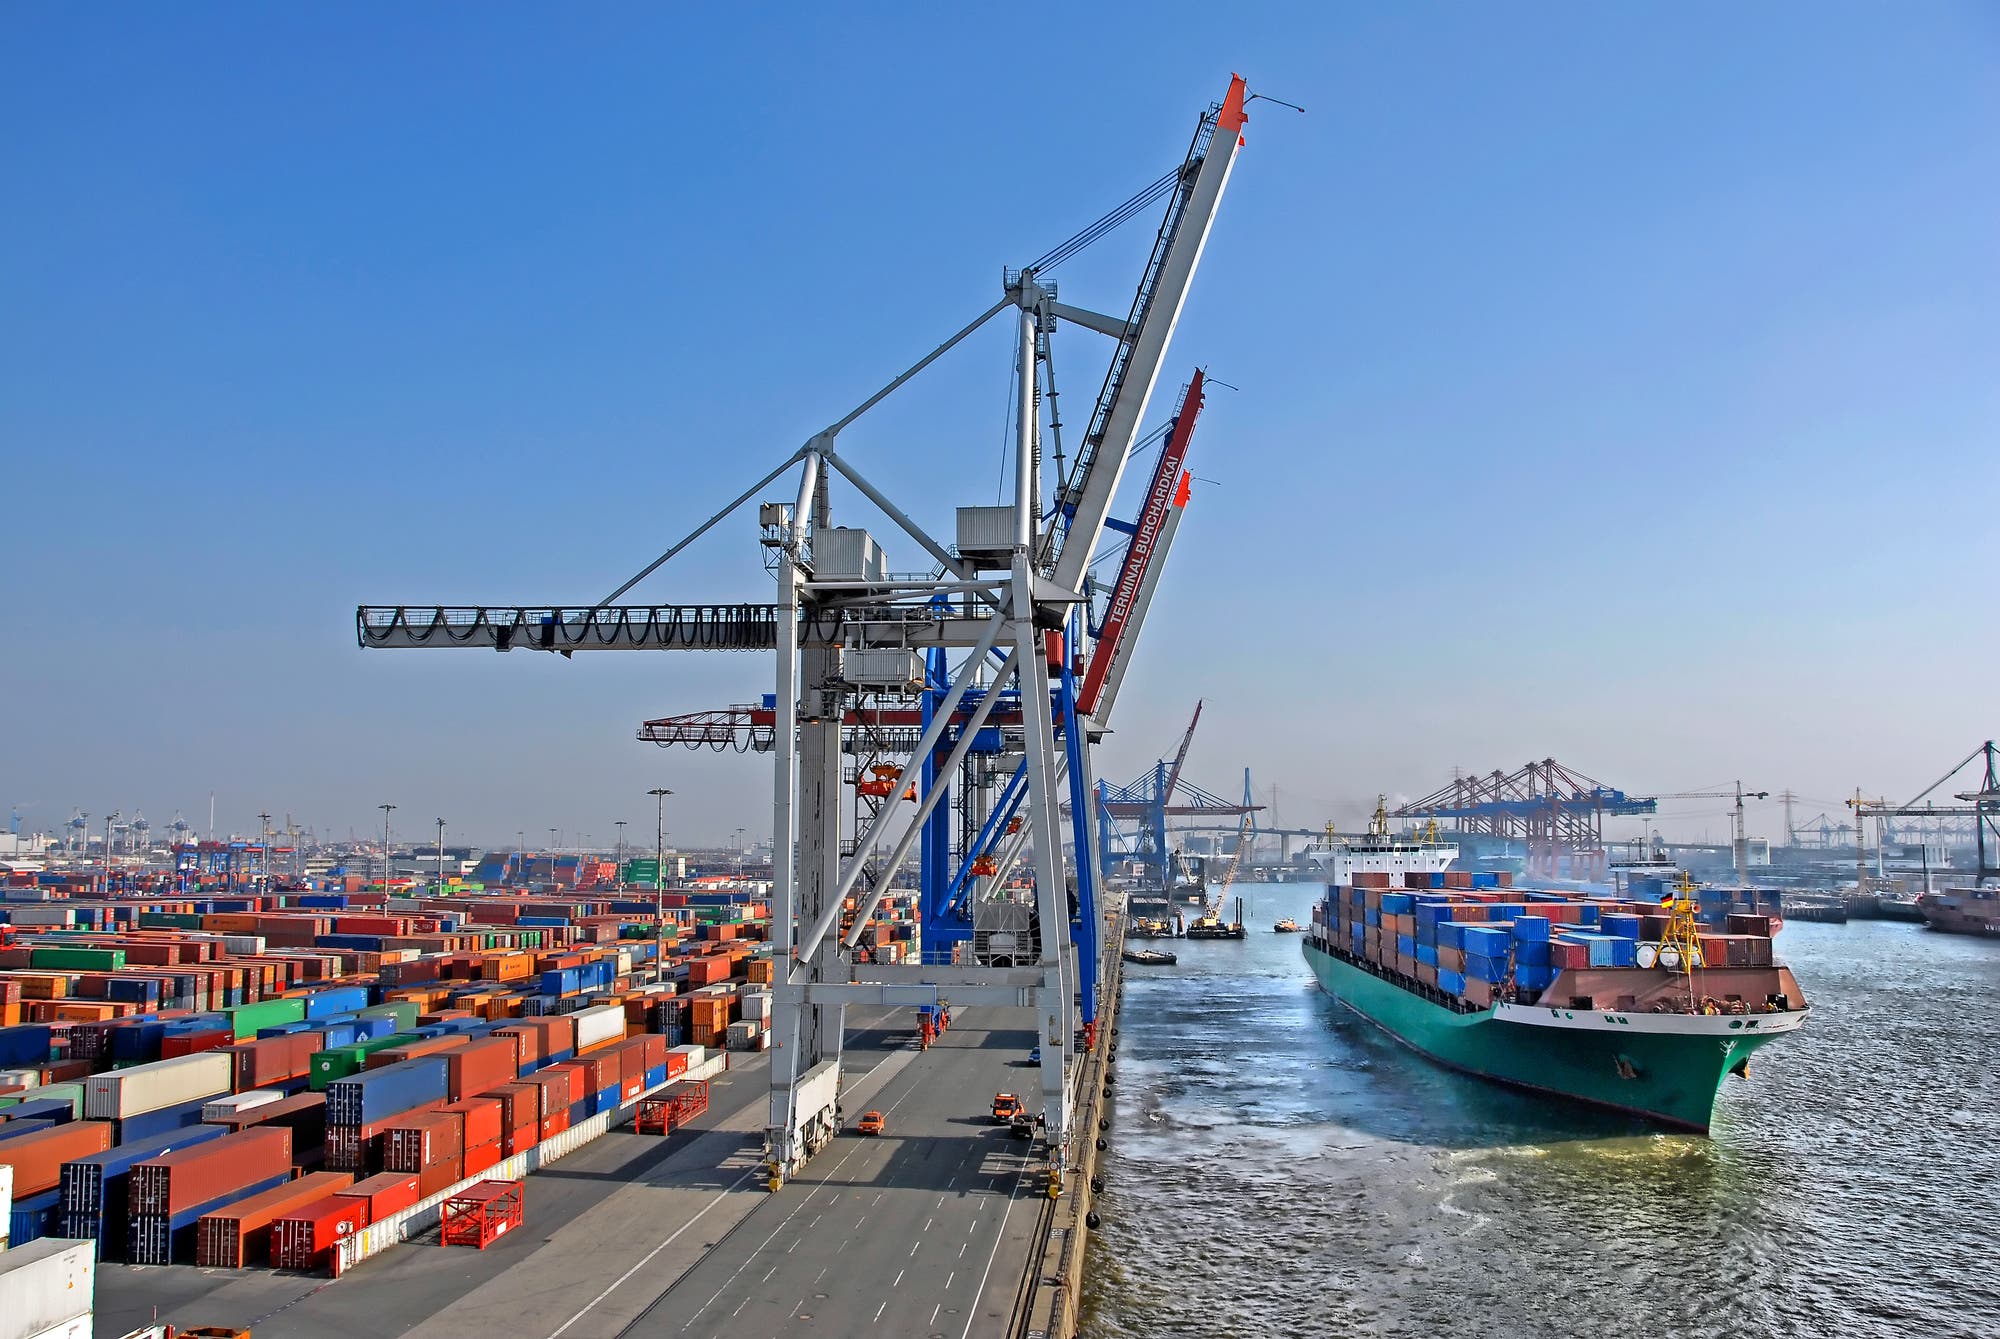 Containerterminal Hamburg-Altenwerder mit einlaufendem Schiff, Containerbrücken und der Köhlbrandbrücke im Hintergrund